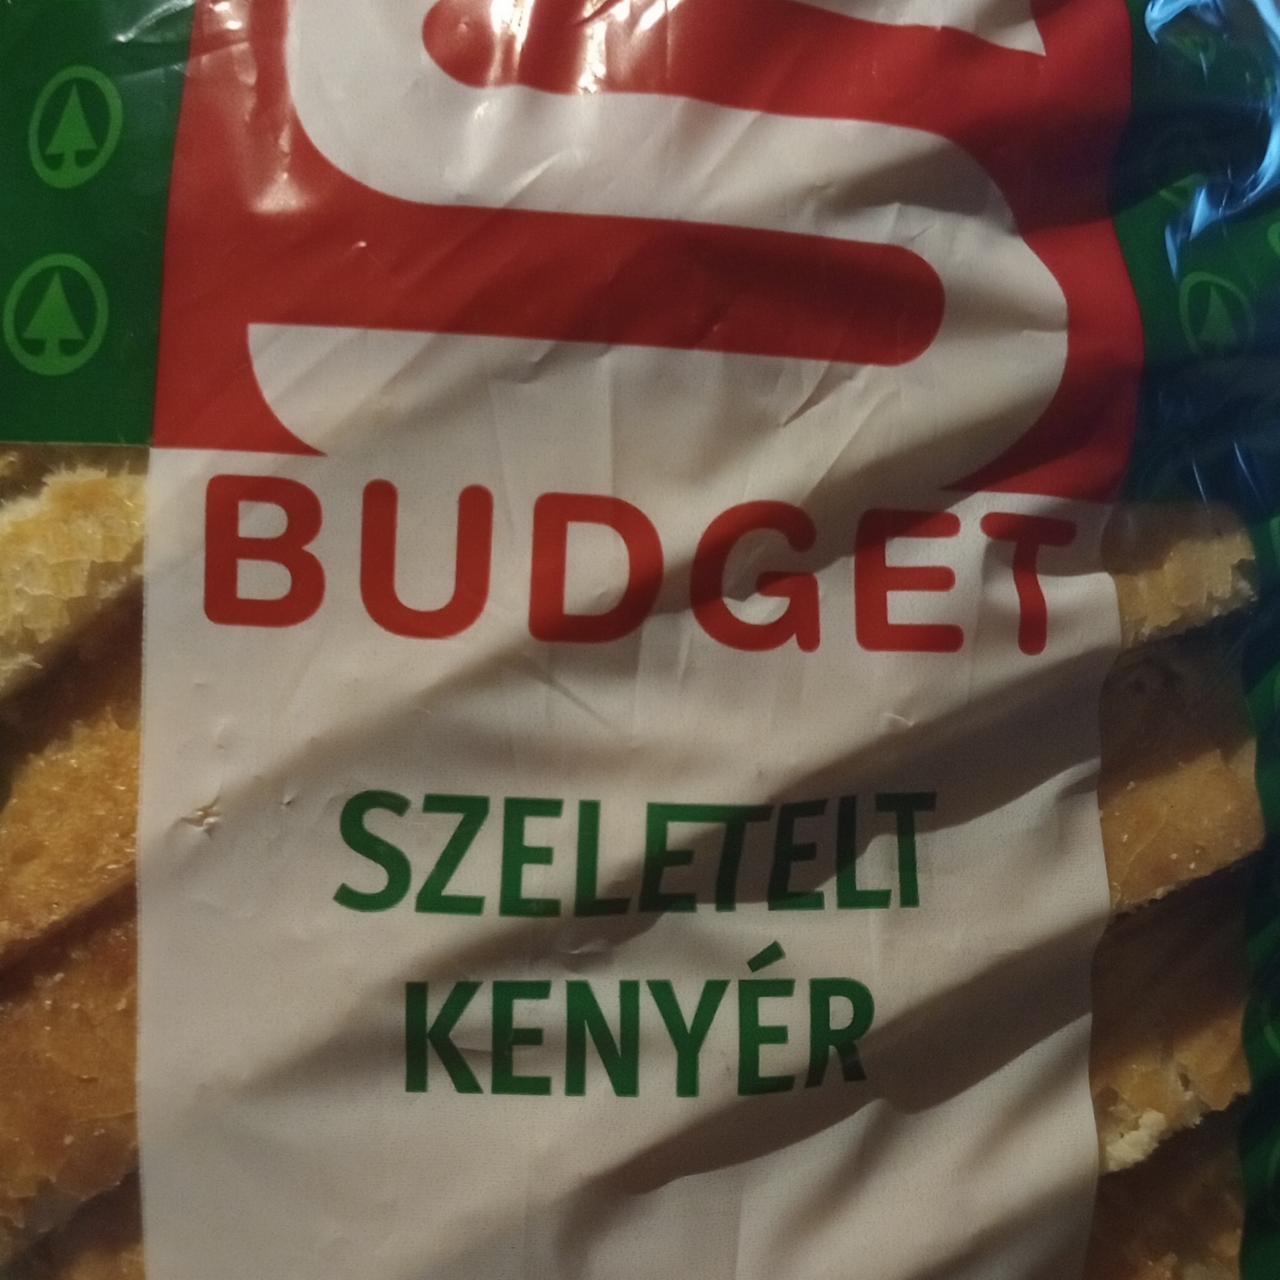 Fotografie - Szeletelt kenyér S Budget